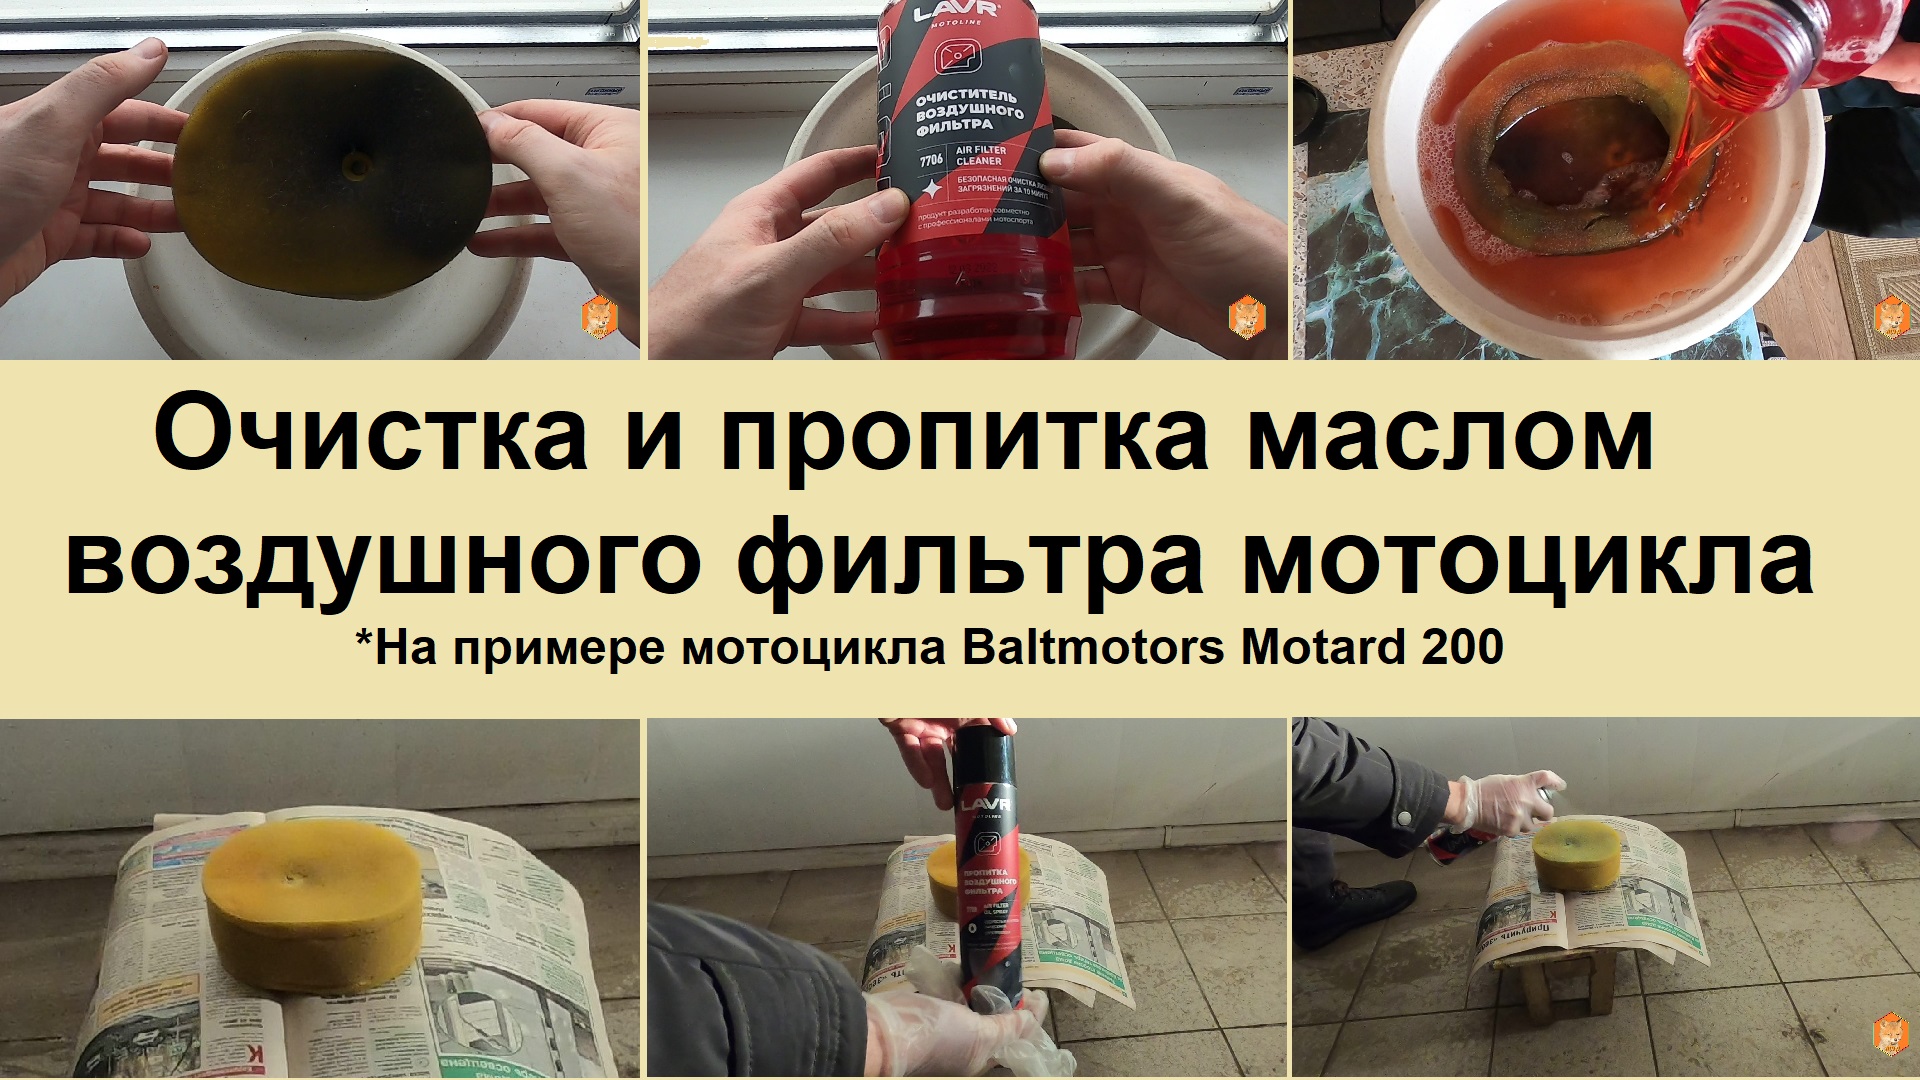 Очистка и пропитка маслом воздушного фильтра мотоцикла